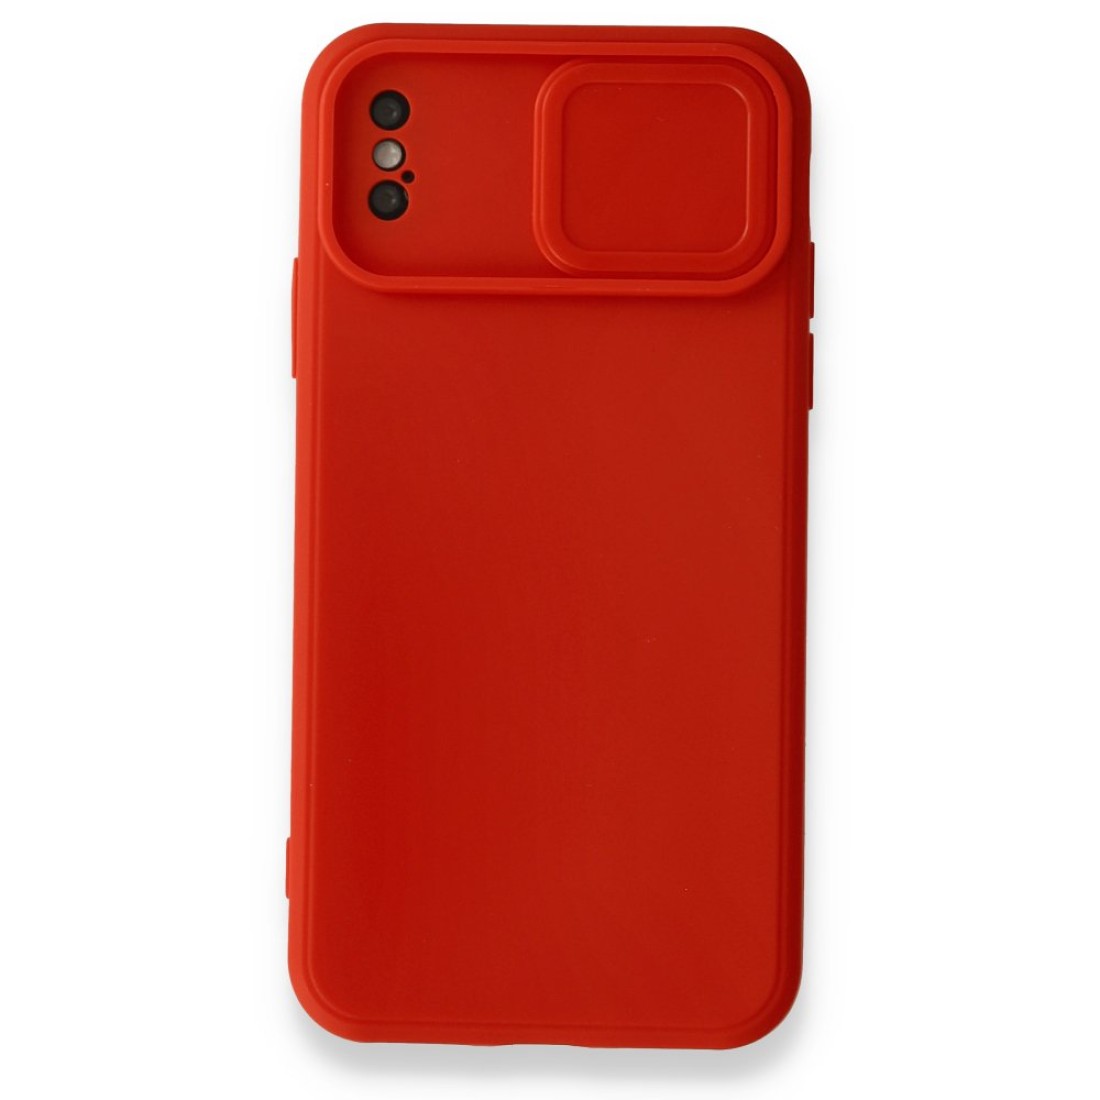 Apple iPhone XS Kılıf Color Lens Silikon - Kırmızı